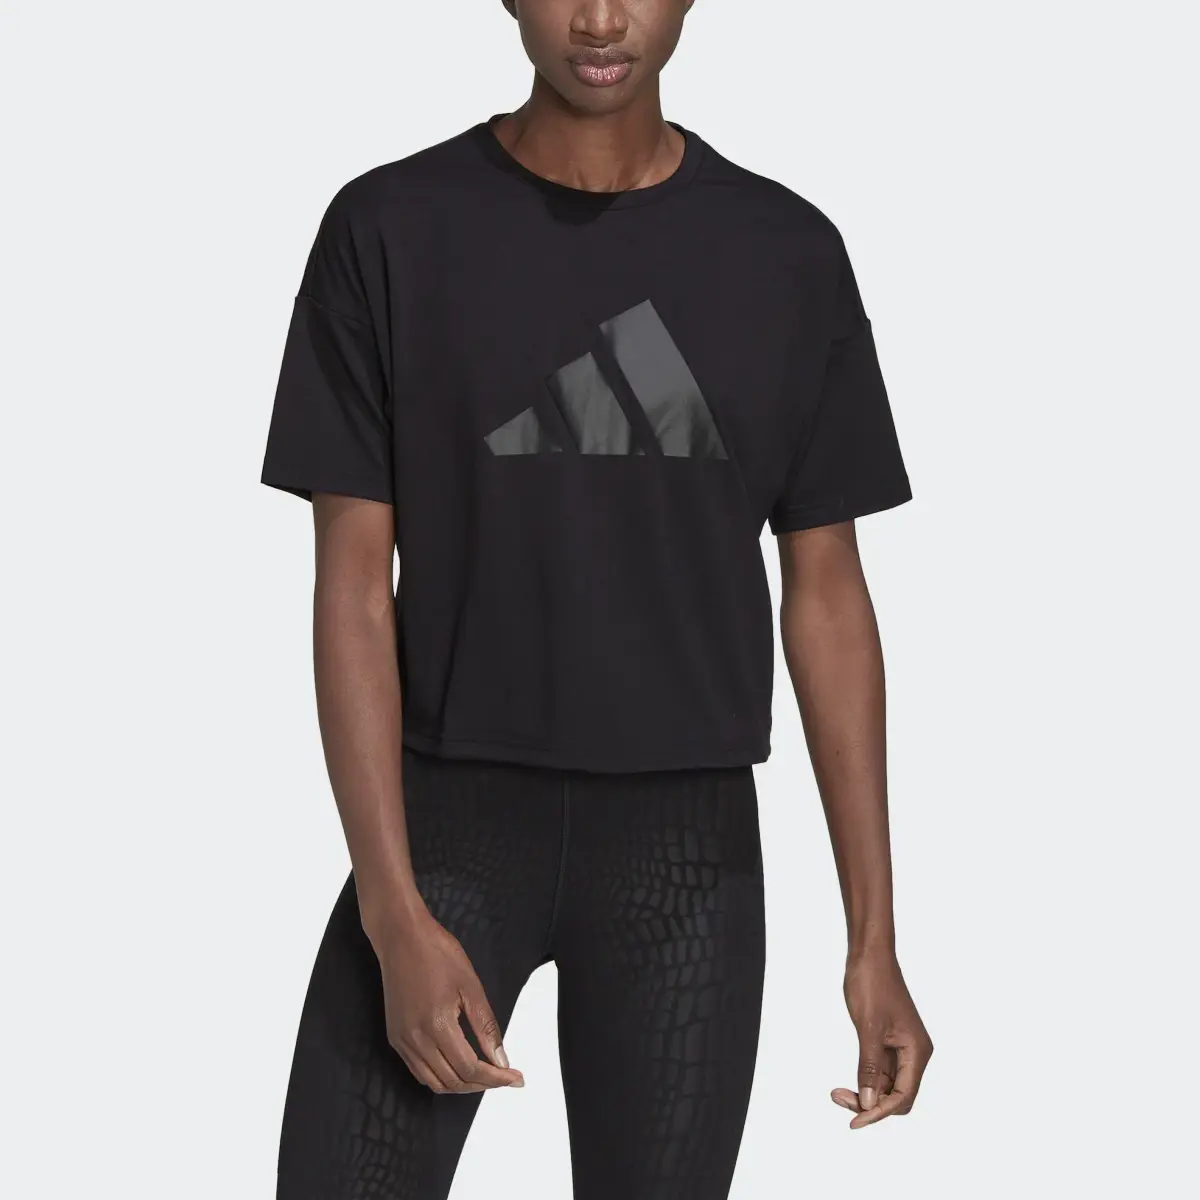 Adidas T-shirt Train Icons. 1